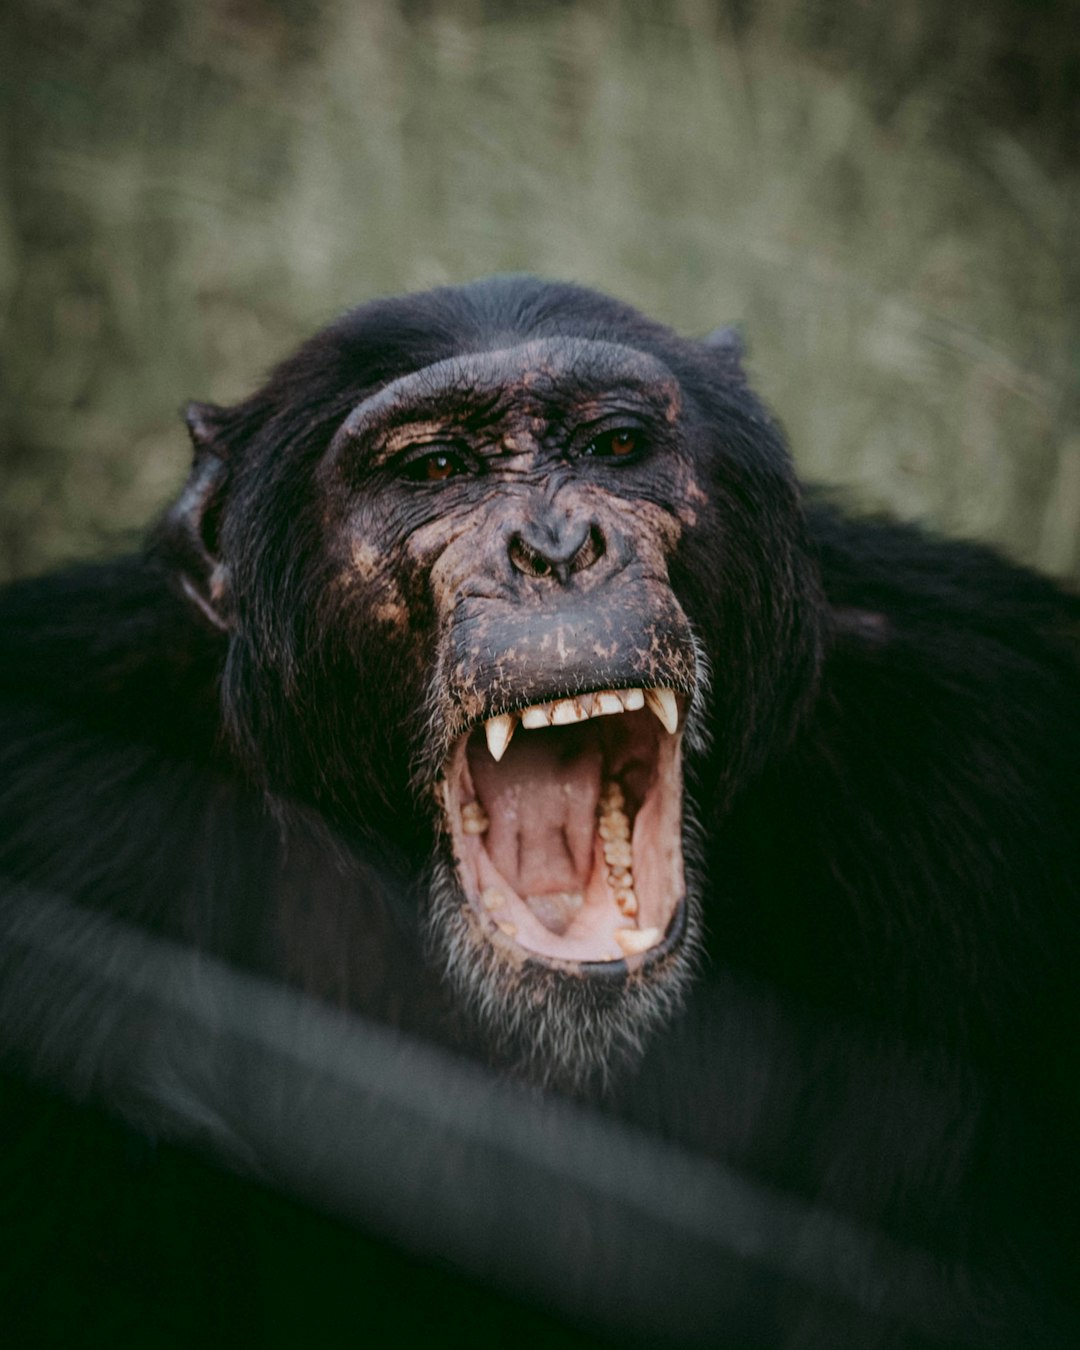  opened mouth chimpanzee gorilla